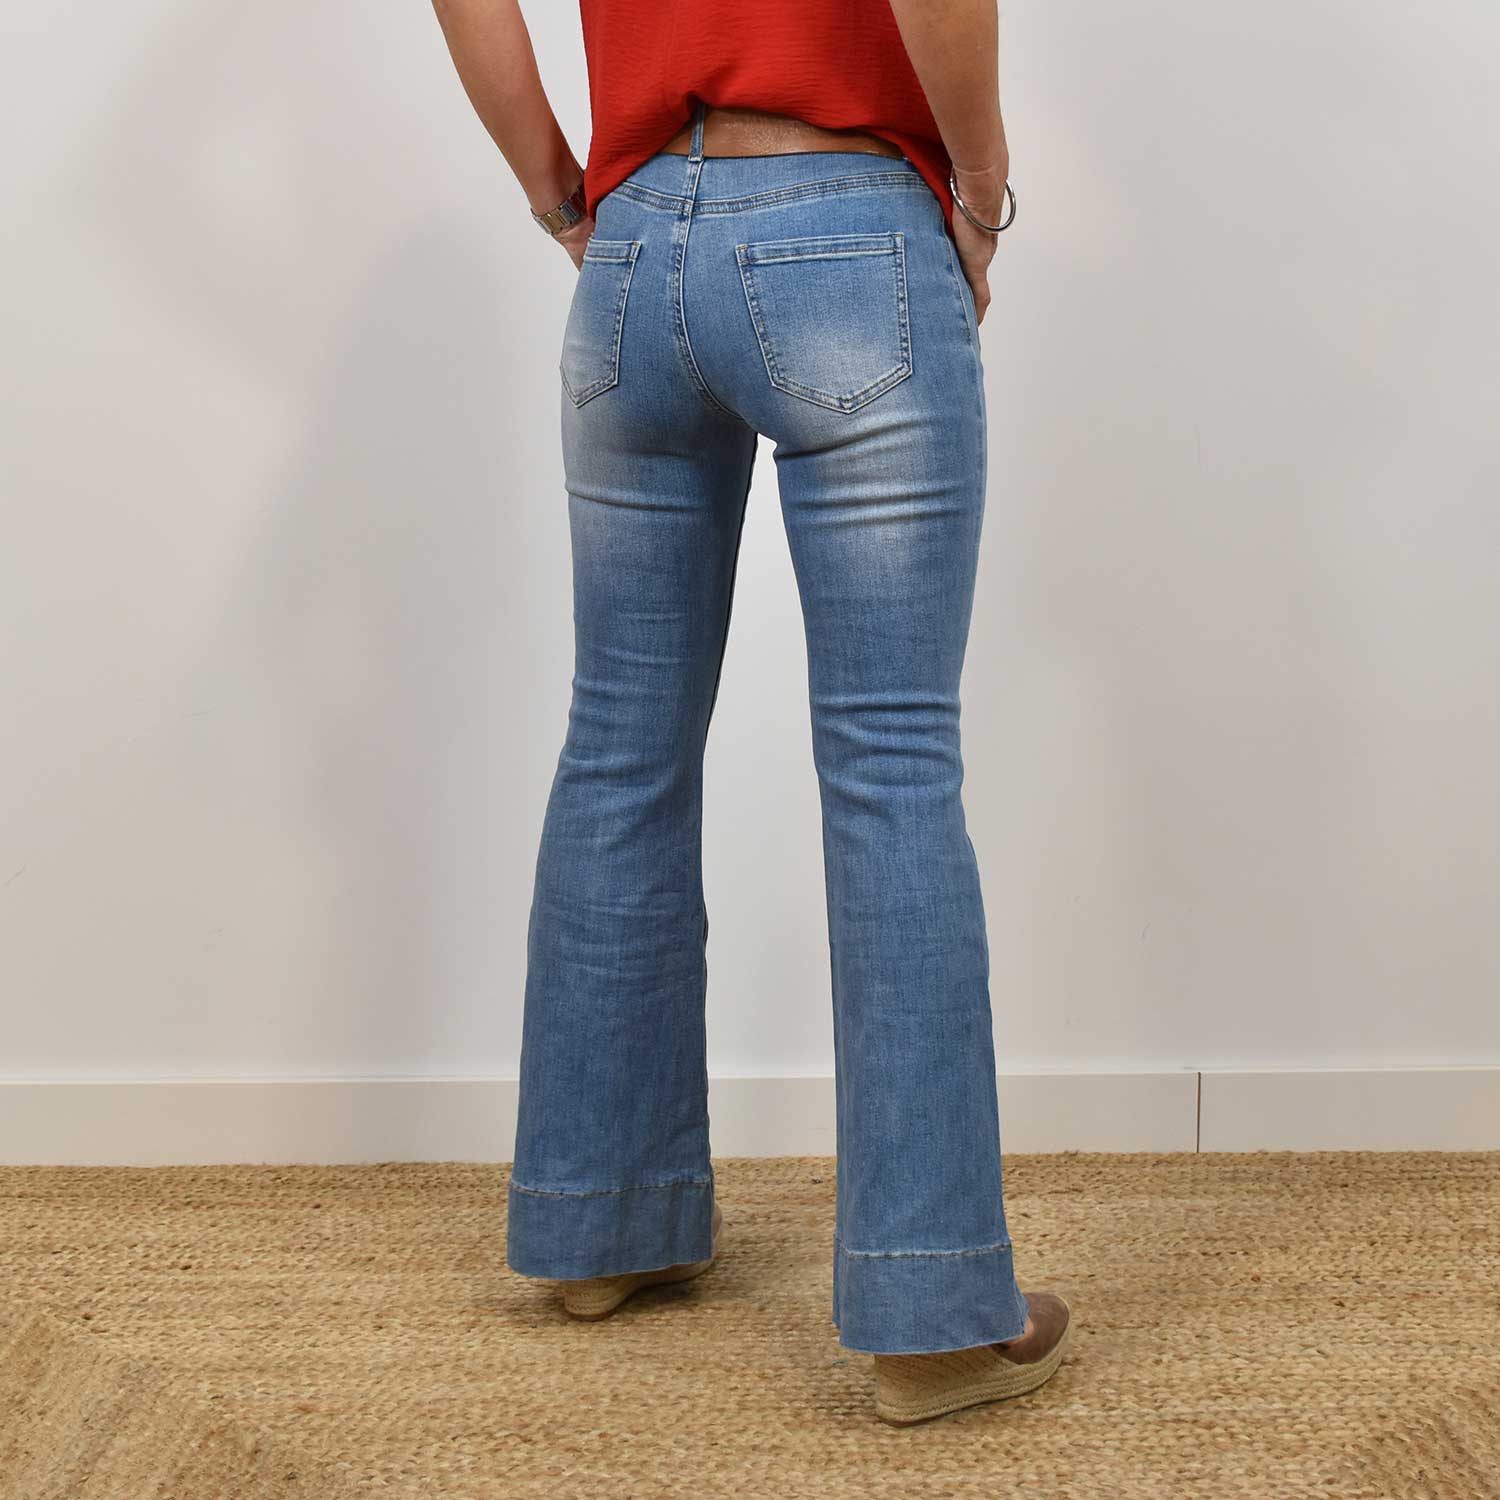 Jeans Cloche poches